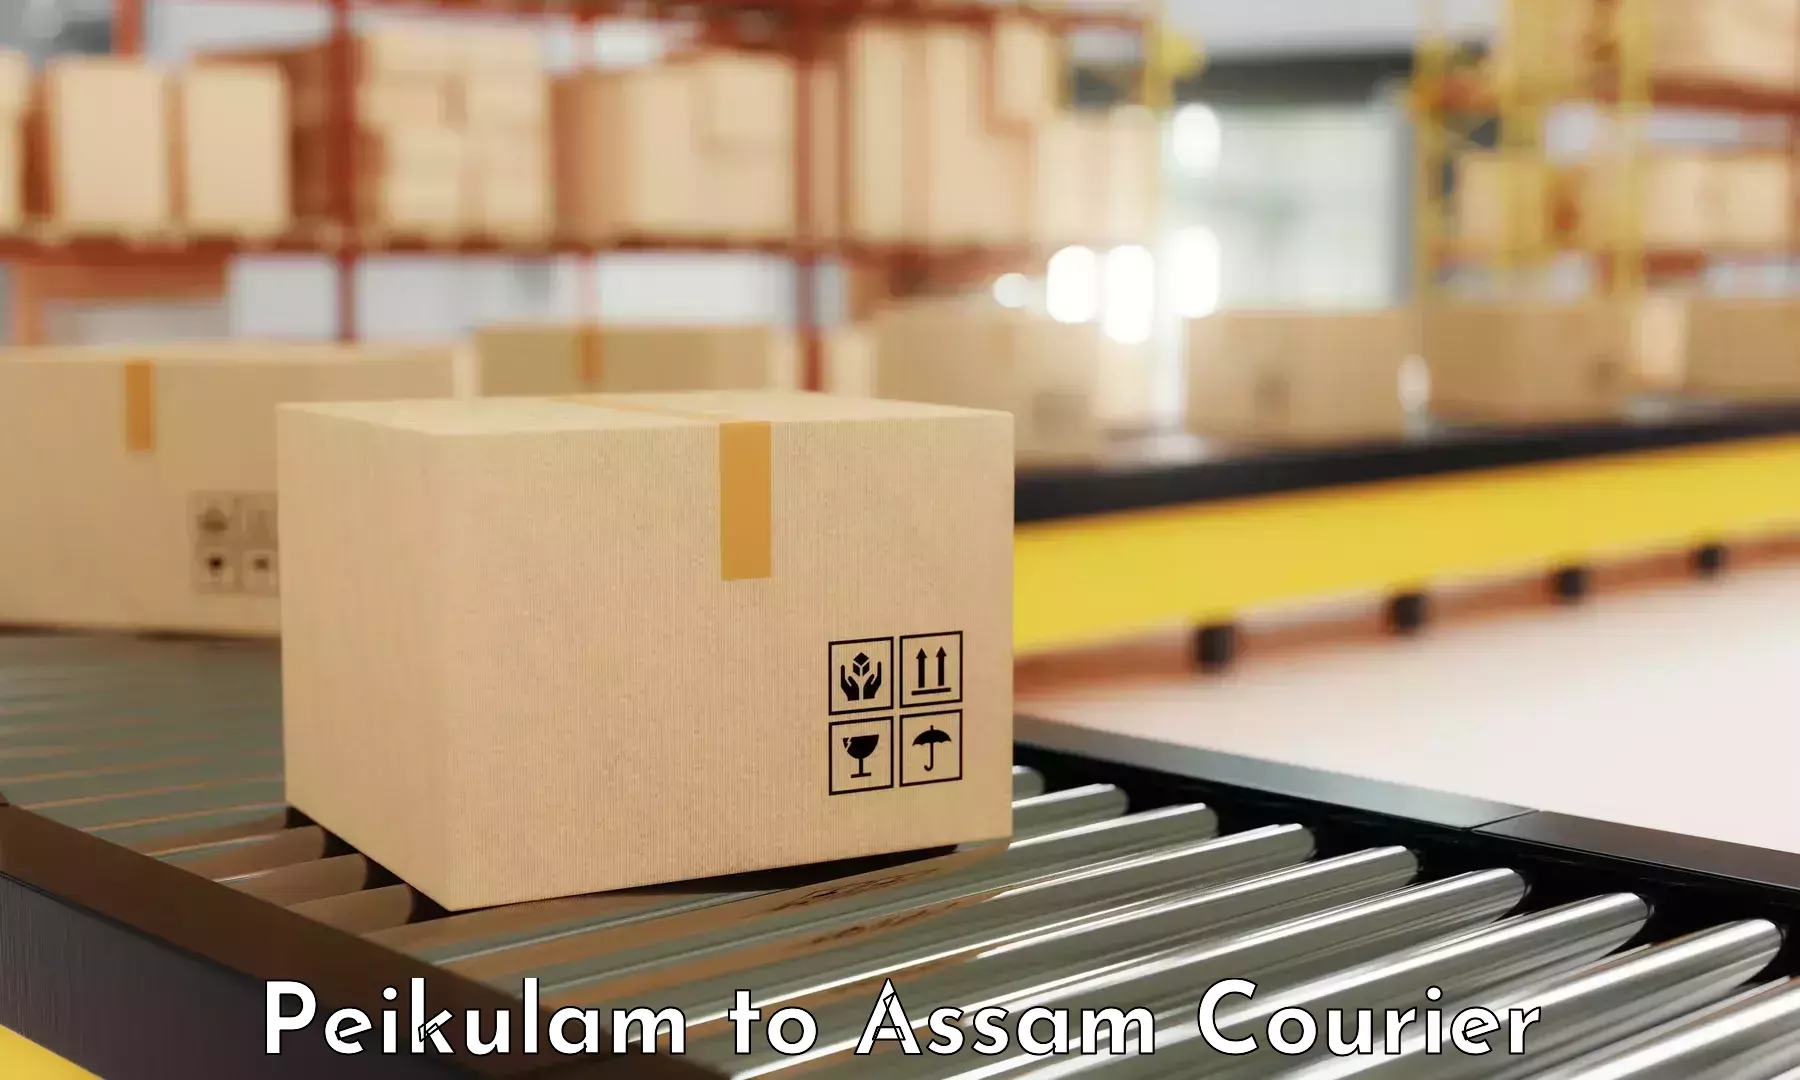 Reliable logistics providers Peikulam to Agomani